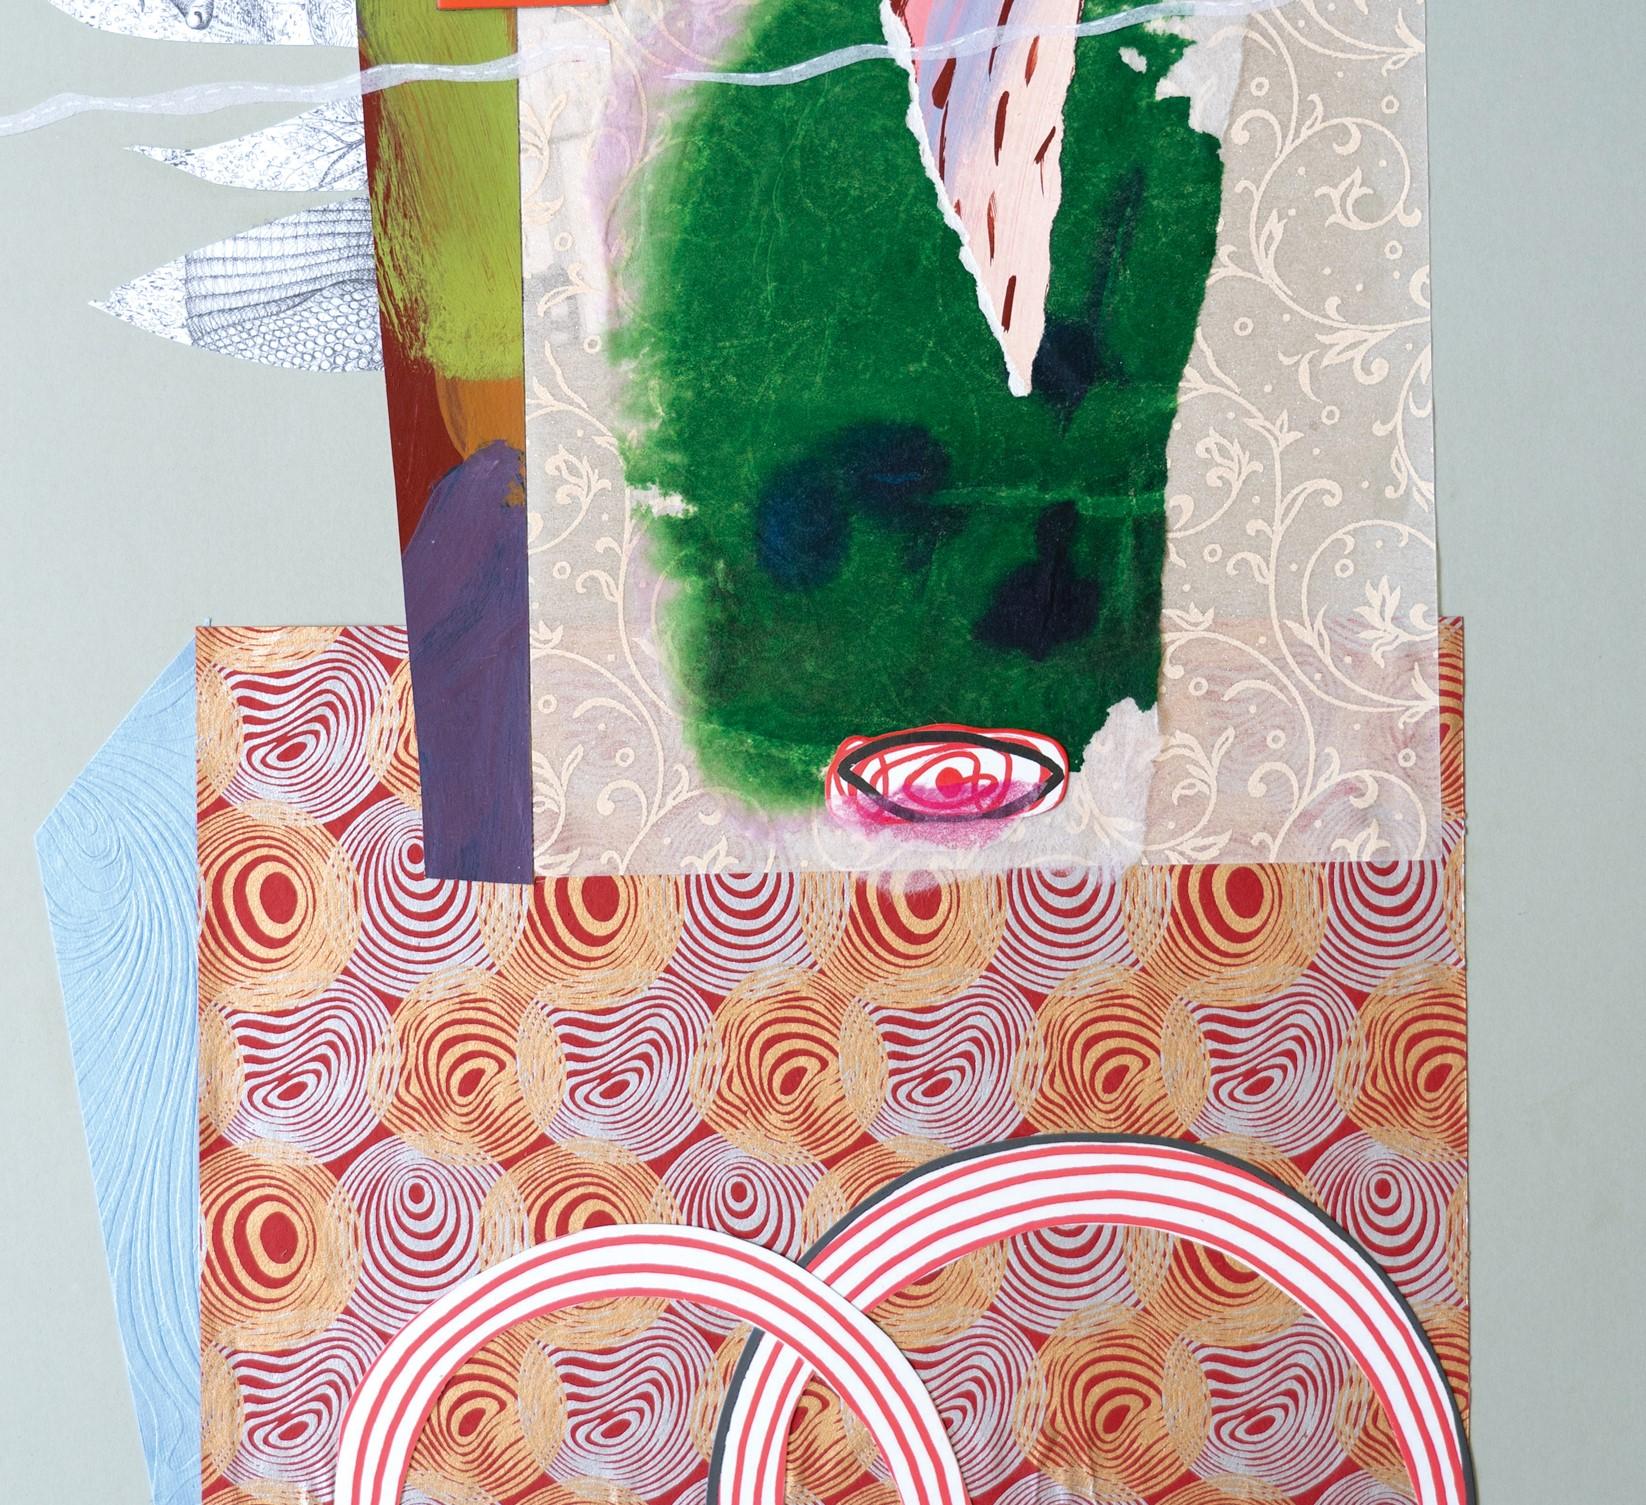 Der Pilger, 2022
Collage, Tempera, Tinte auf Papier
56,5 H x 40,5 B cm

Raluca Arnăutu träumt die Welt durch Collagen. Eine Collage, traumhaft und surreal, bevölkert von Tausenden von Papierstücken, Textilien, Plastikteilen, gefundenen oder